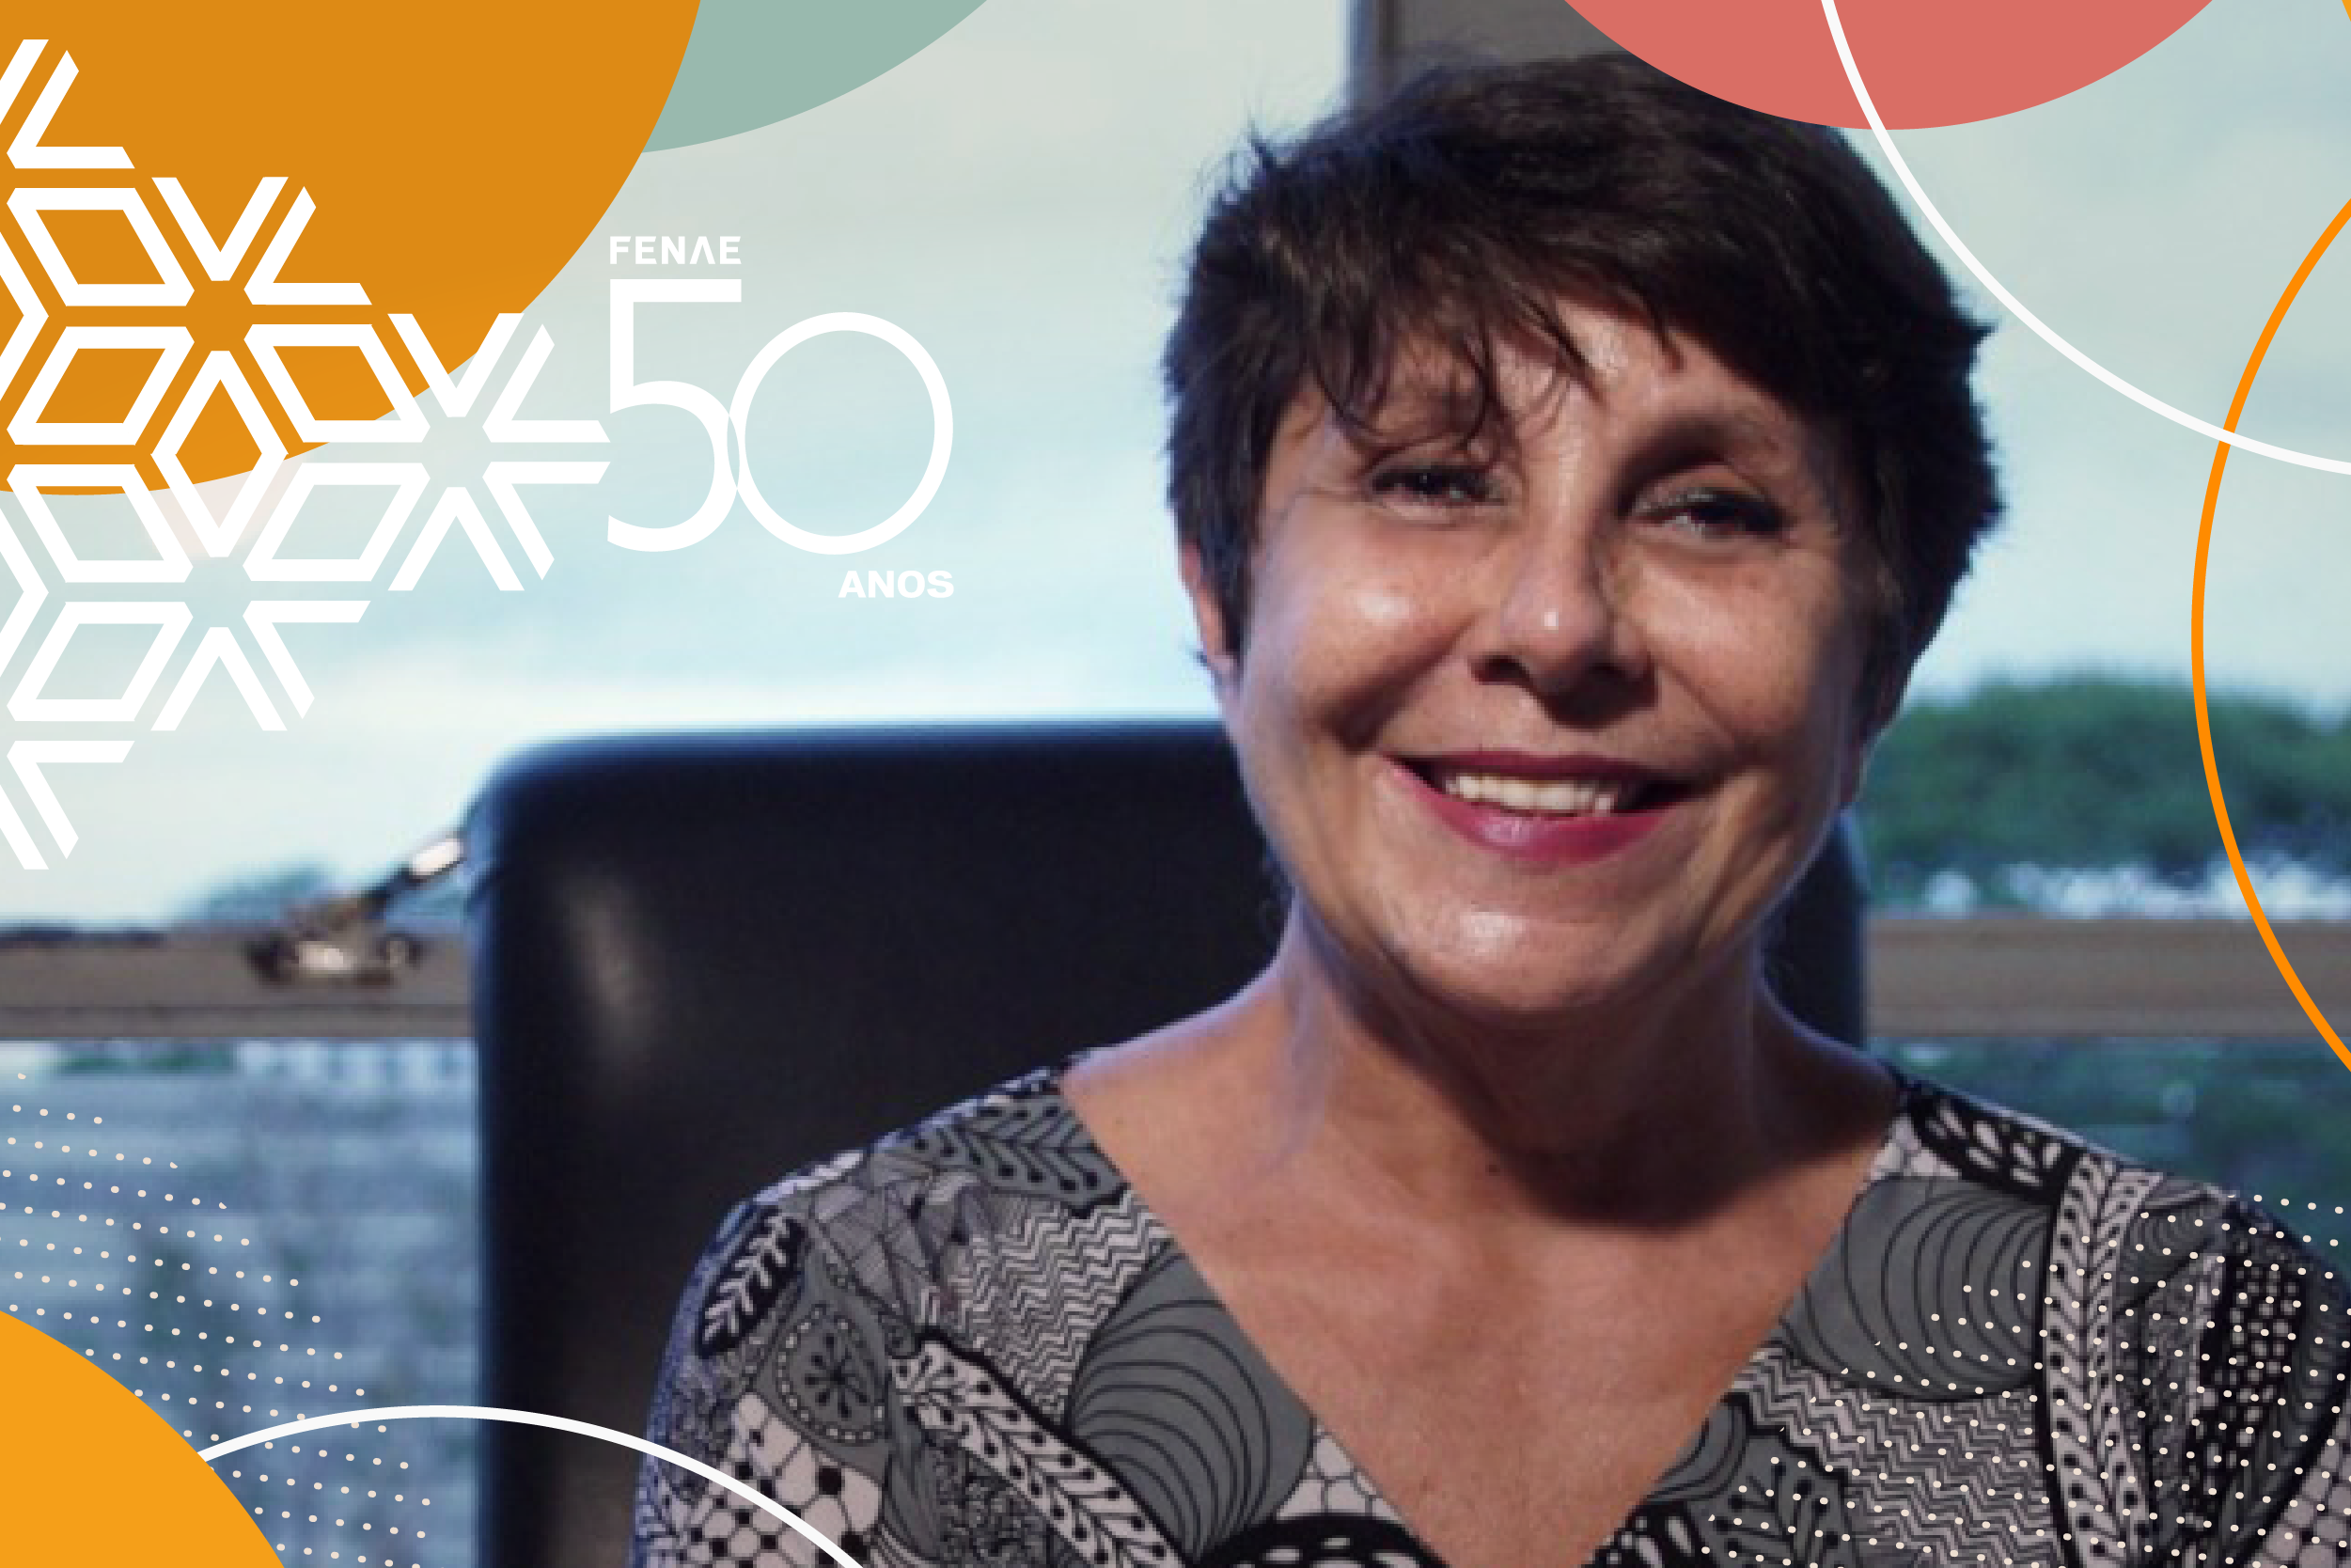 Érika e os 50 anos da Fenae: “Quem tem compromisso com o Brasil, fortalece a Caixa”